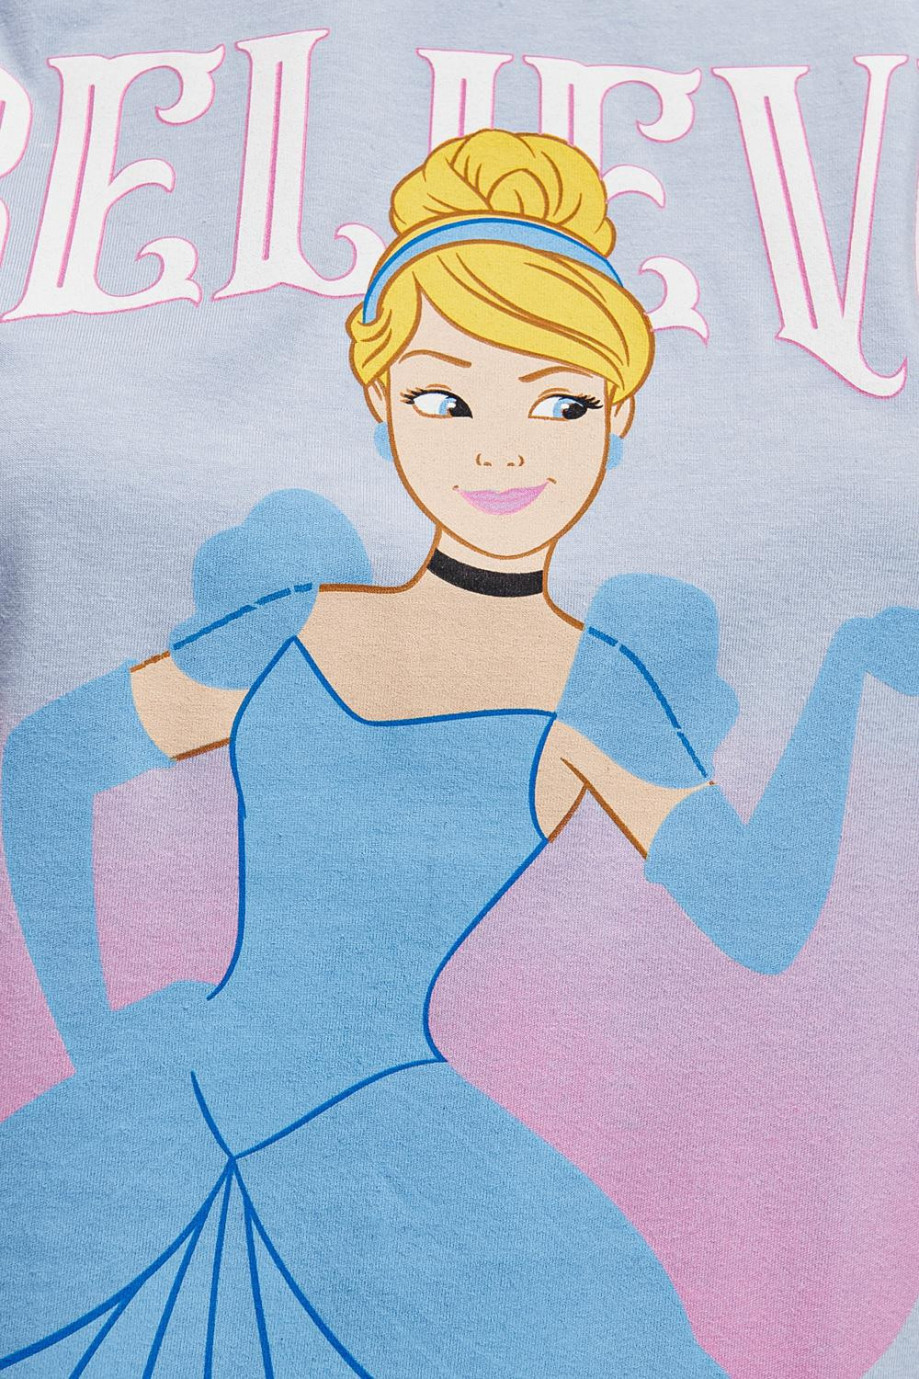 Camiseta, estampado de la princesa Cenicienta.